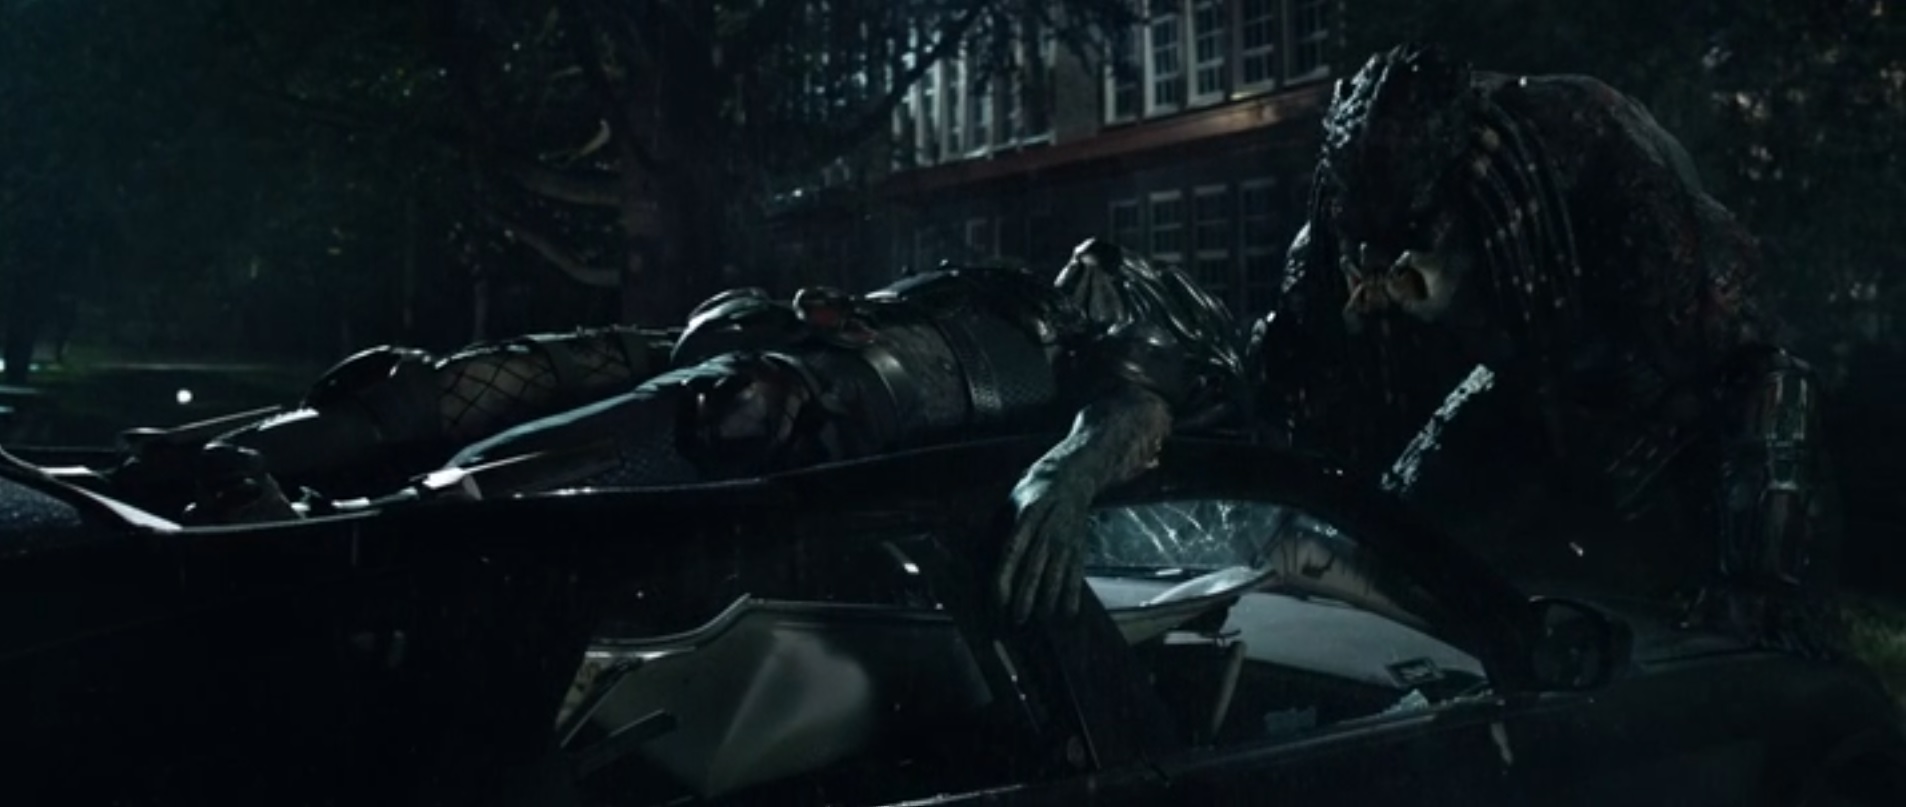 O Super Predador massacra o Predador que conhecemos, batendo com ele no capô de um carro.